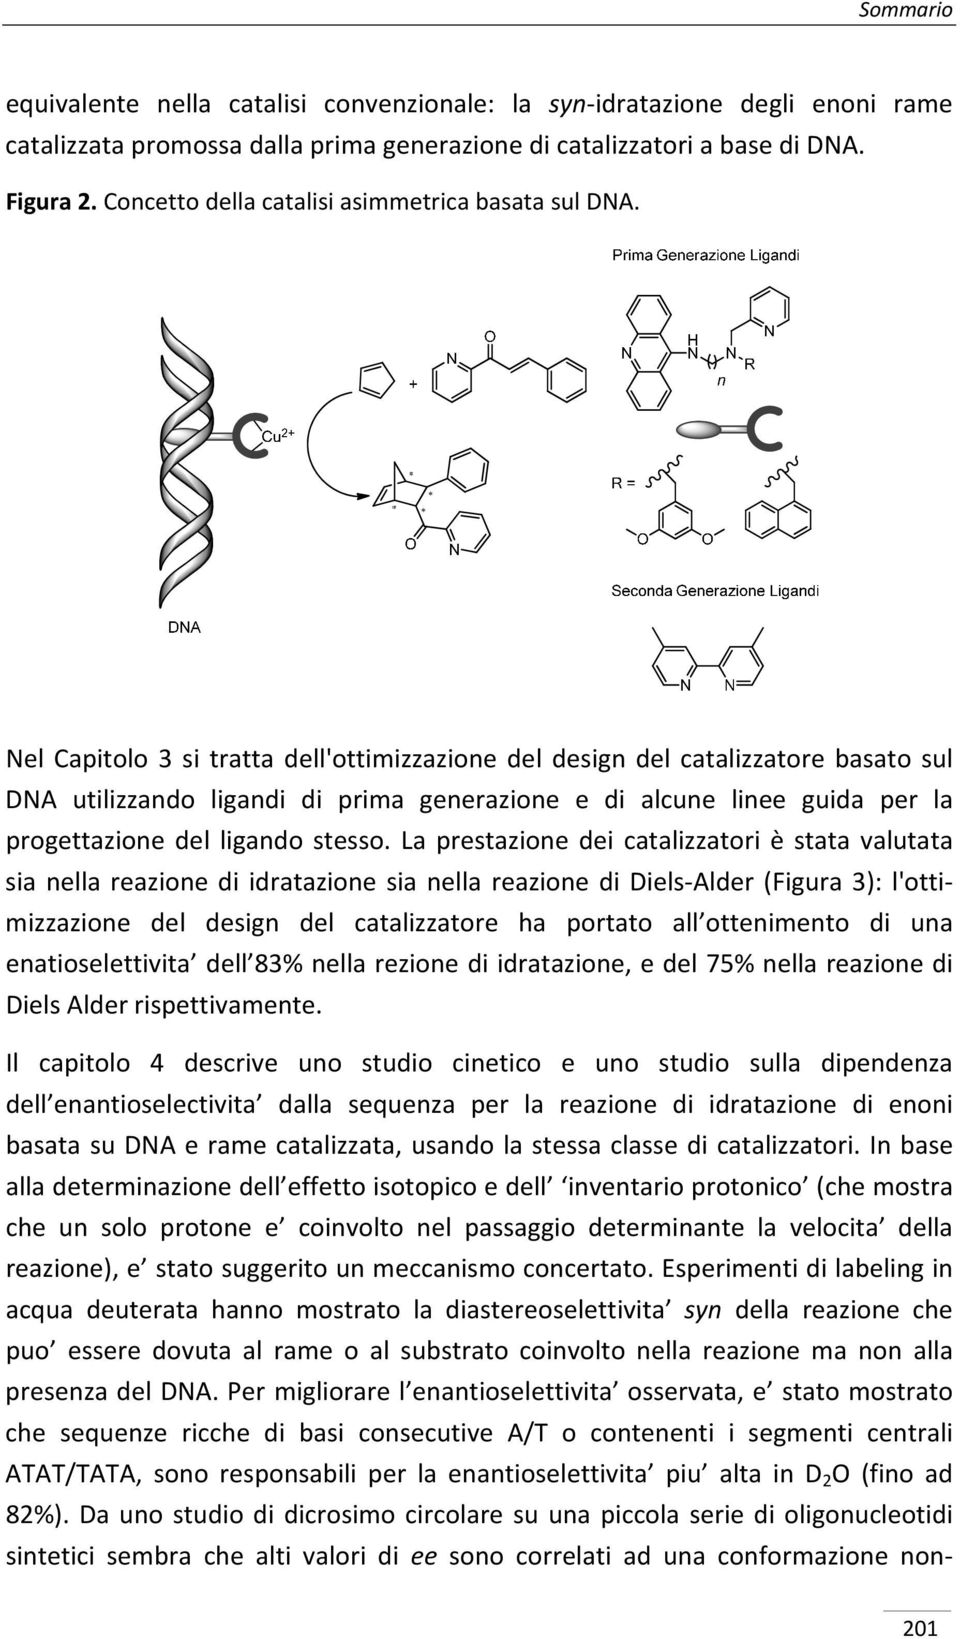 Nel Capitolo 3 si tratta dell'ottimizzazione del design del catalizzatore basato sul DNA utilizzando ligandi di prima generazione e di alcune linee guida per la progettazione del ligando stesso.